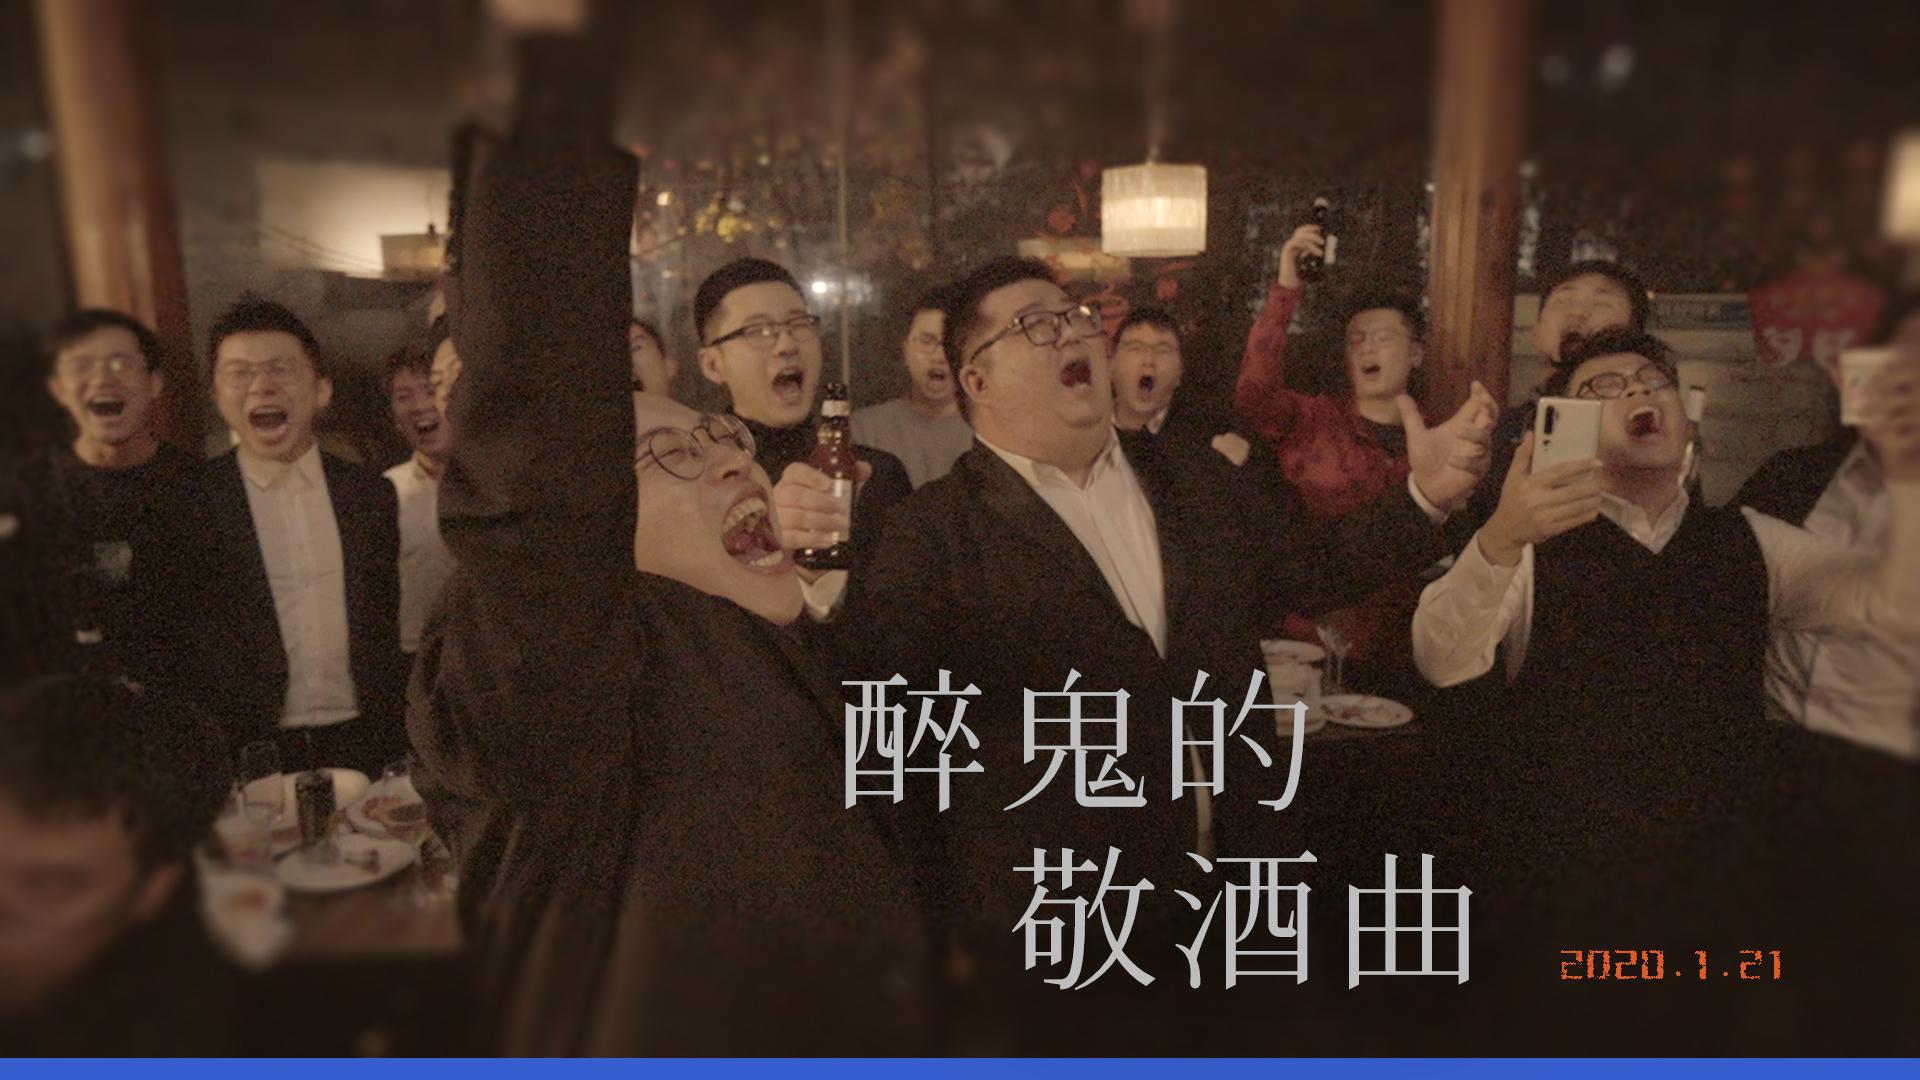 上海彩虹室内合唱团 - 【彩虹合唱】醉鬼Live版《醉鬼的敬酒曲》